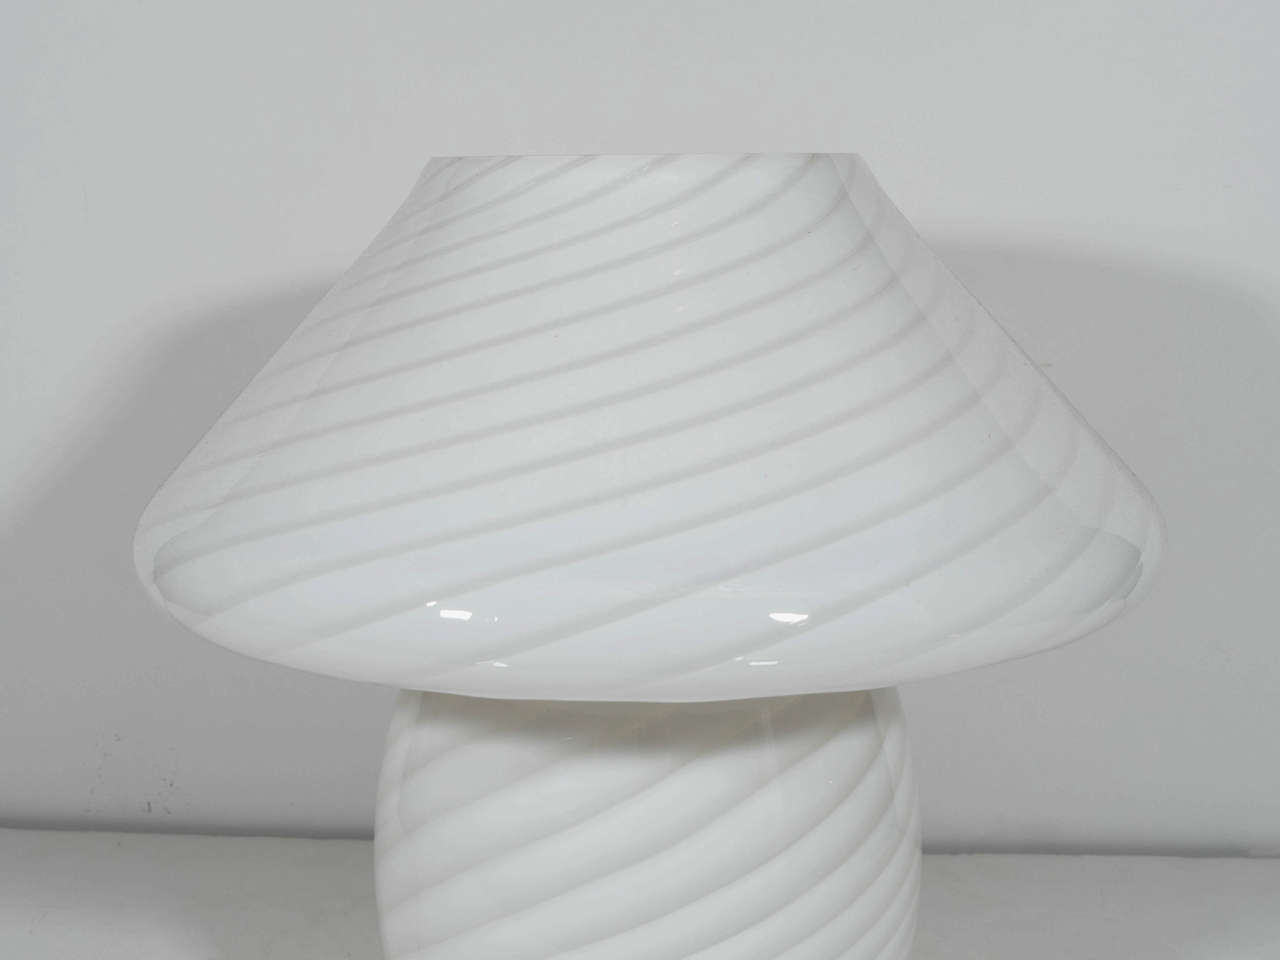 vetri murano mushroom lamp